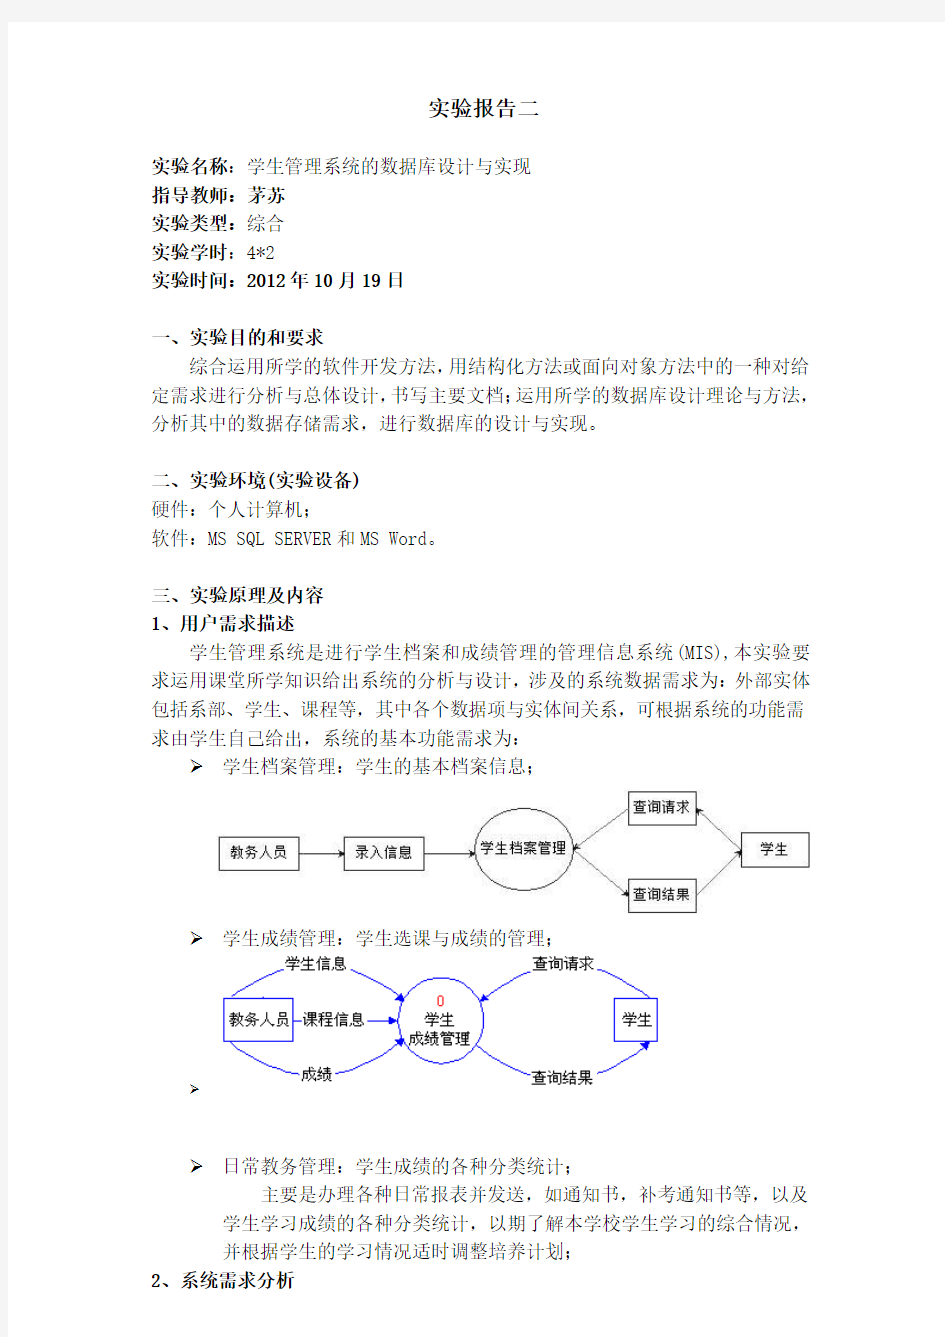 学生管理系统的数据库设计与实现 南京邮电大学软件工程与数据库技术实验报告2